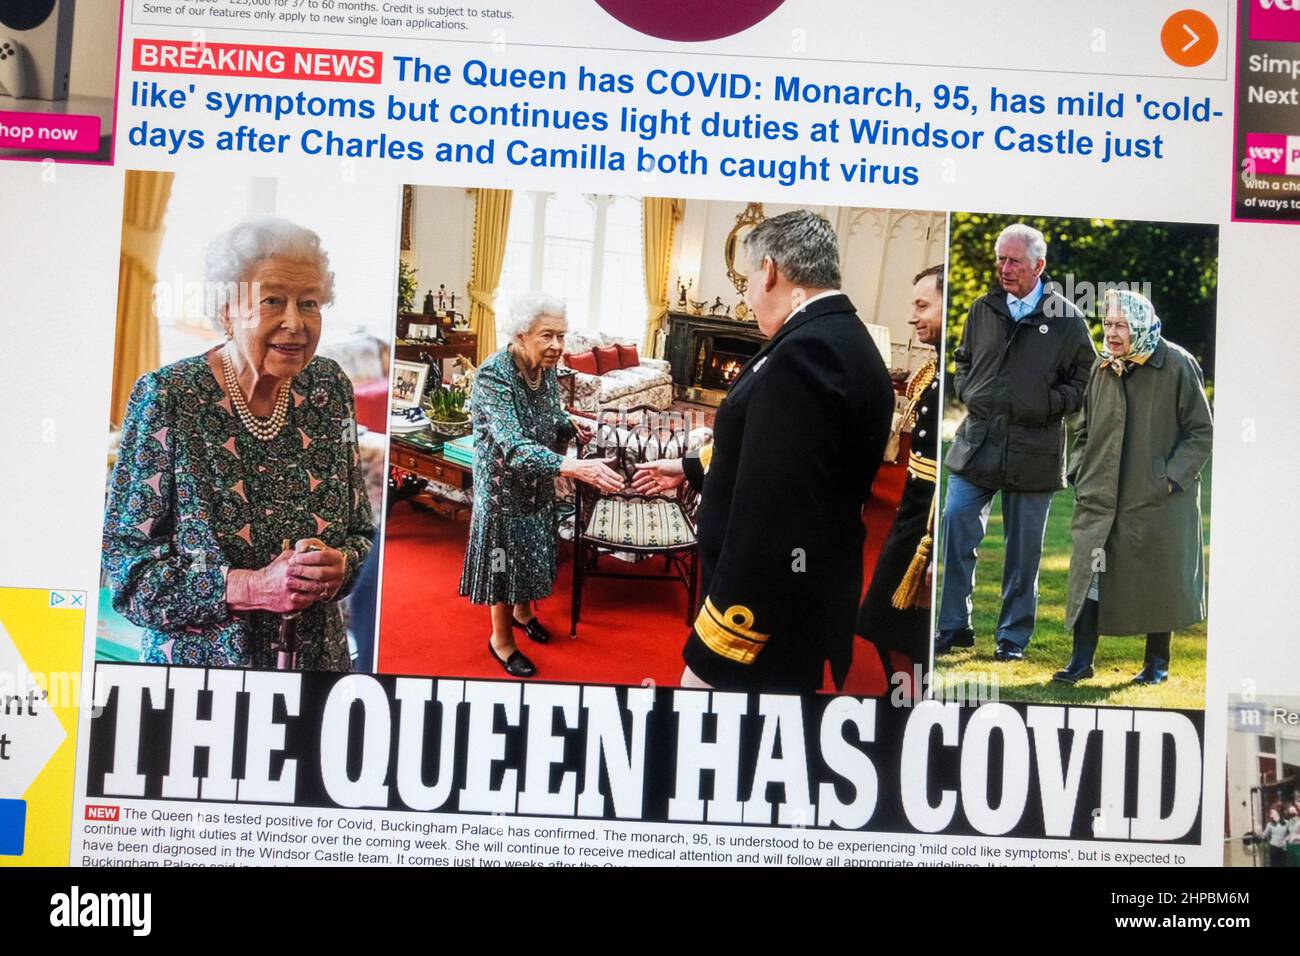 Captura de pantalla siguiente a las noticias de última hora que la reina Elizabeth II dio positivo para Covid-19: headline on (Daily) Mail sitio web en línea el 20th de febrero de 2022 Foto de stock